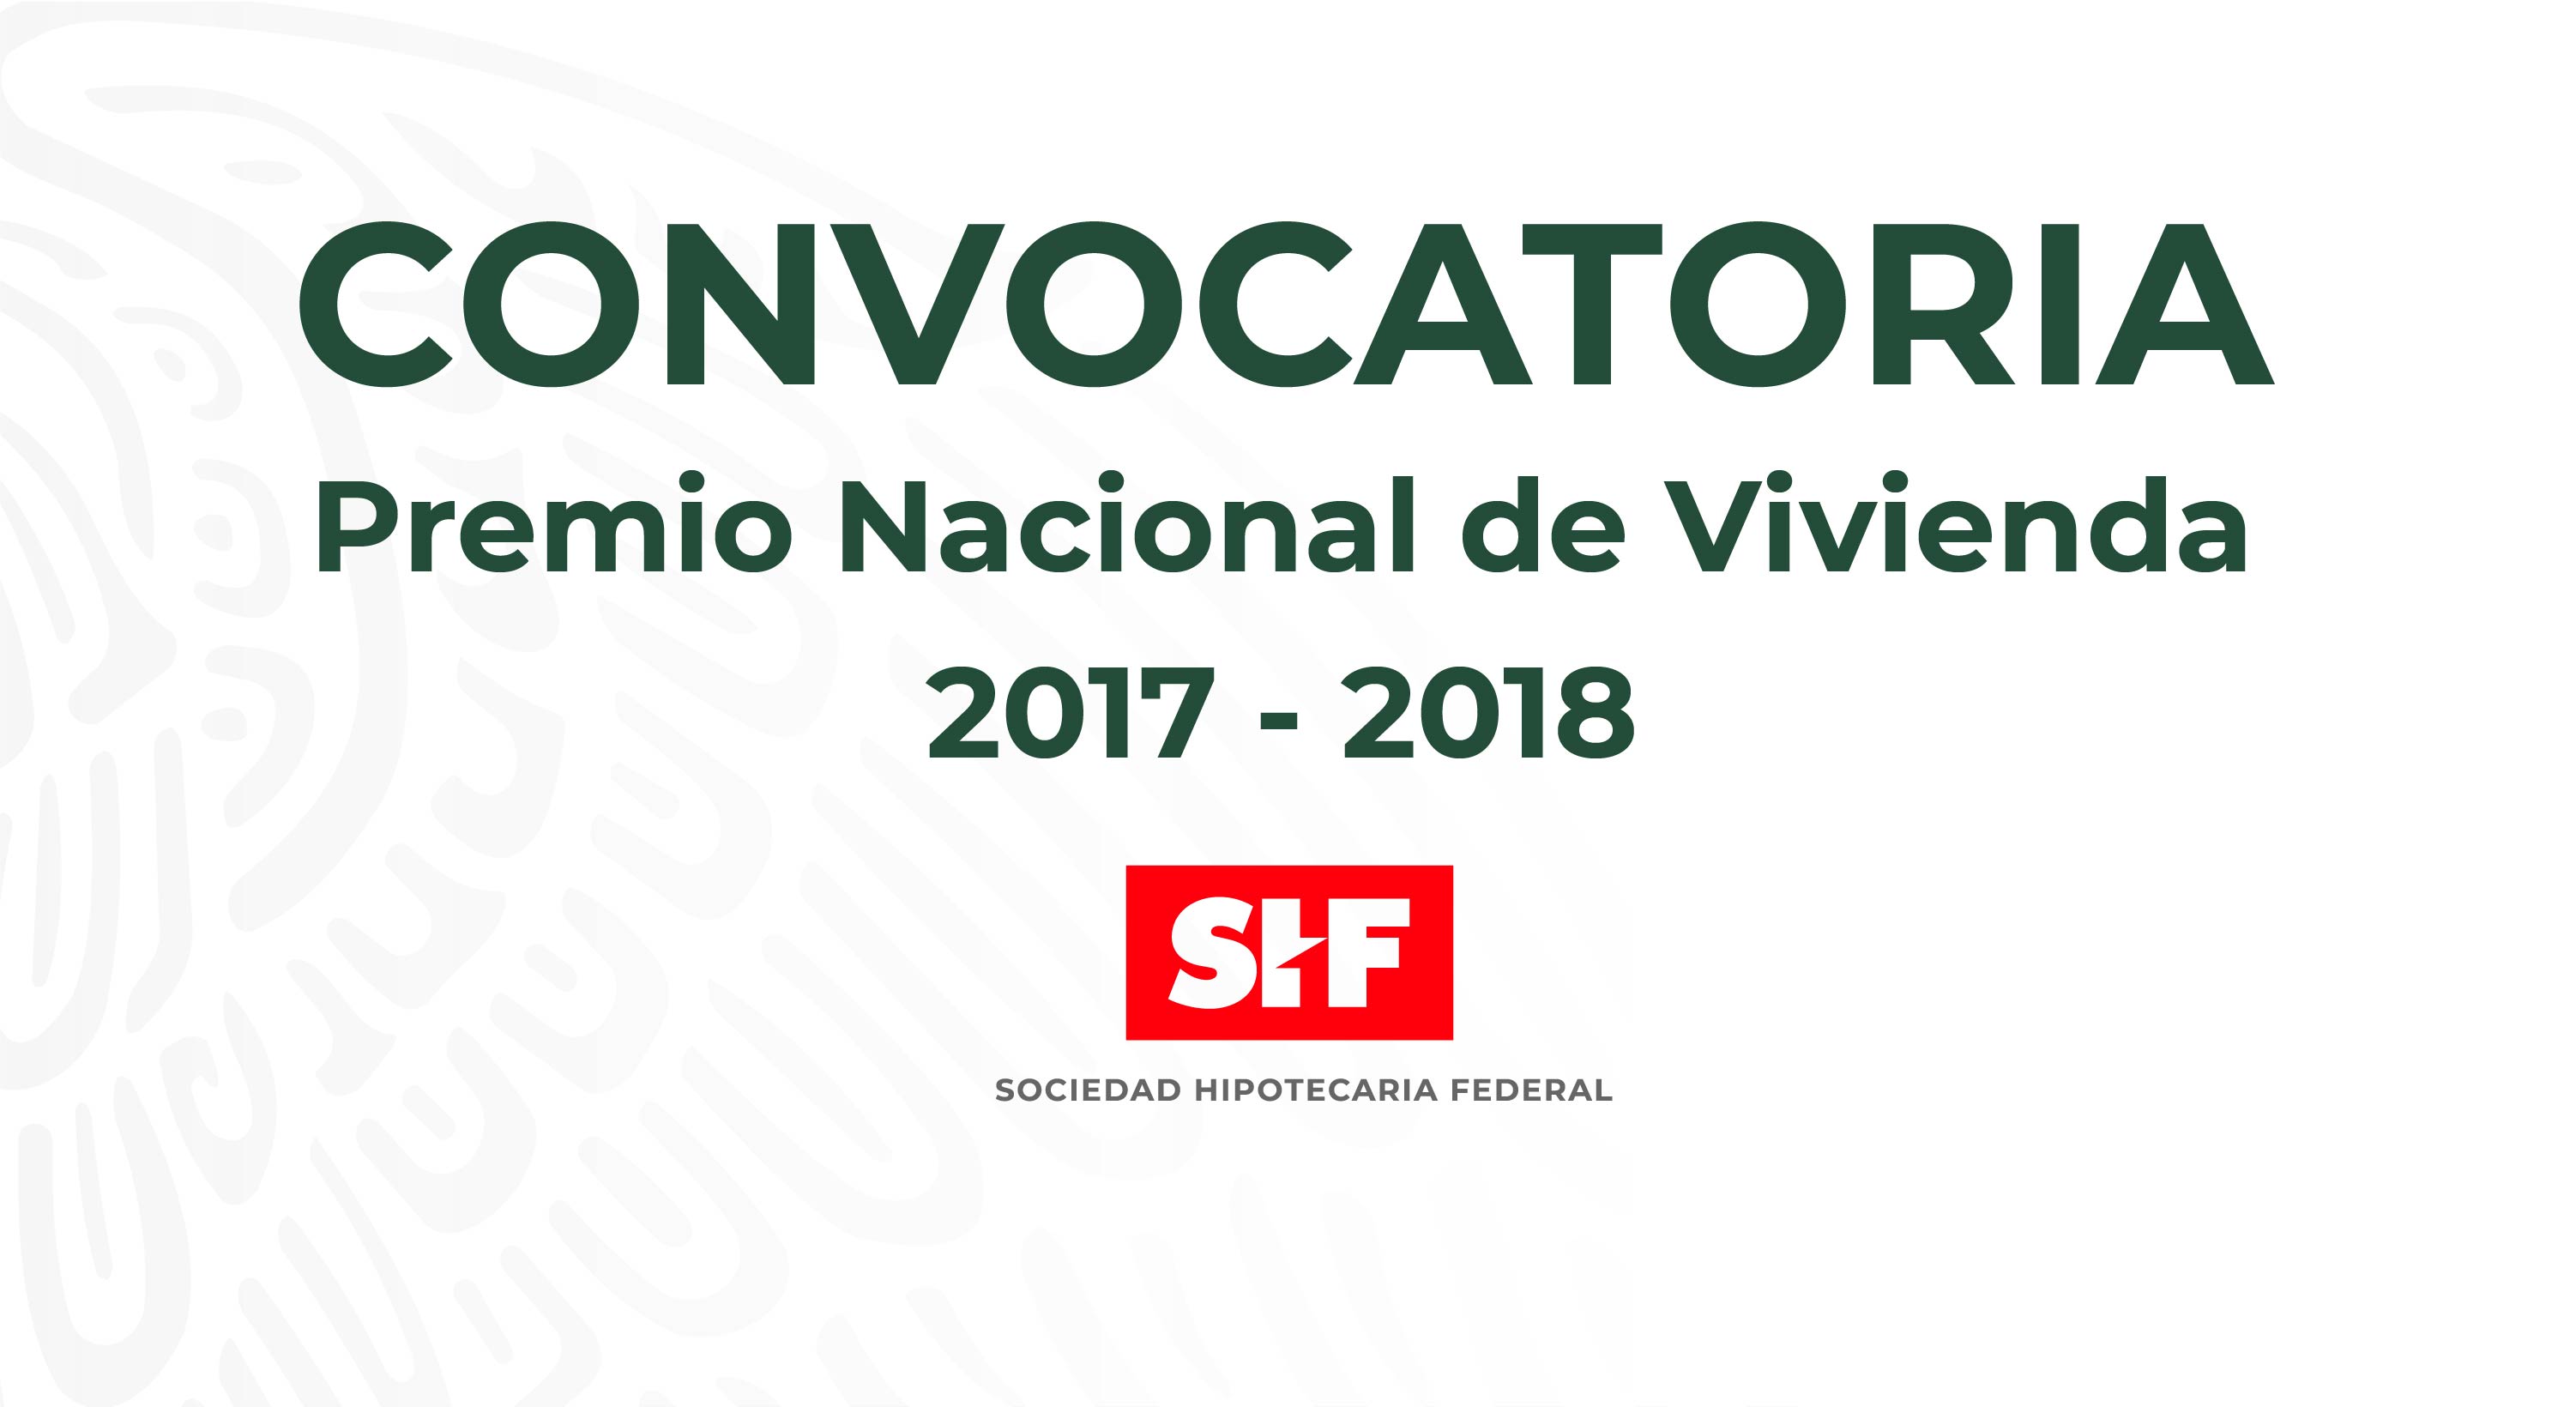 PREMIO NACIONAL DE VIVIENDA 2017 - 2018